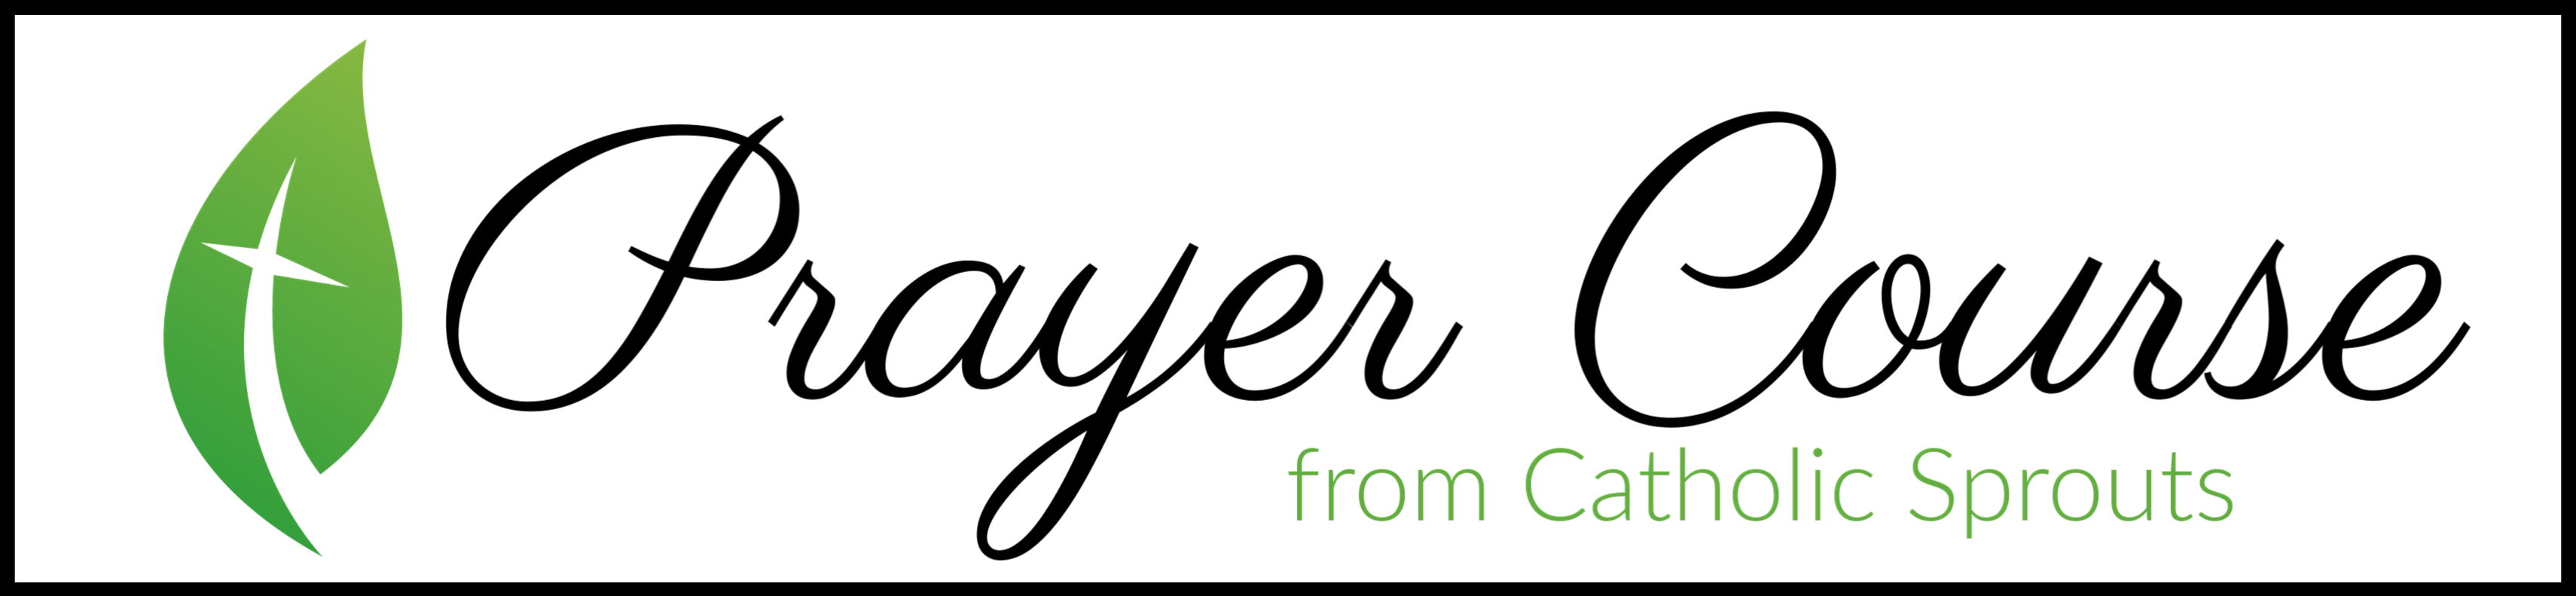 Prayer Course